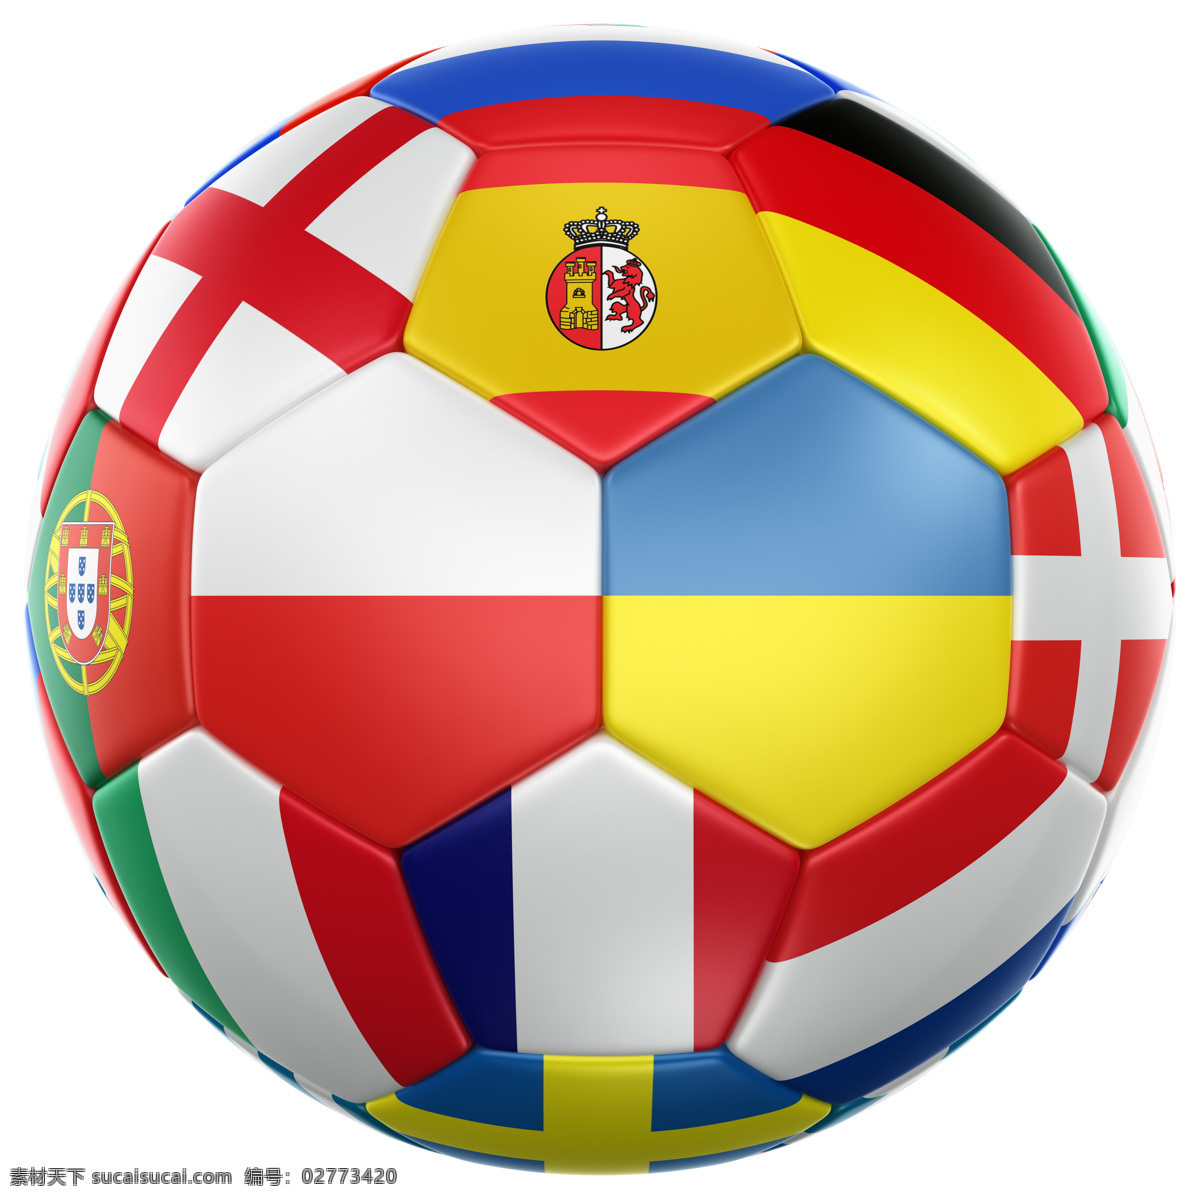 欧洲杯足球 欧洲杯 足球 欧洲 体育 创意足球 世界杯 体育用品 生活百科